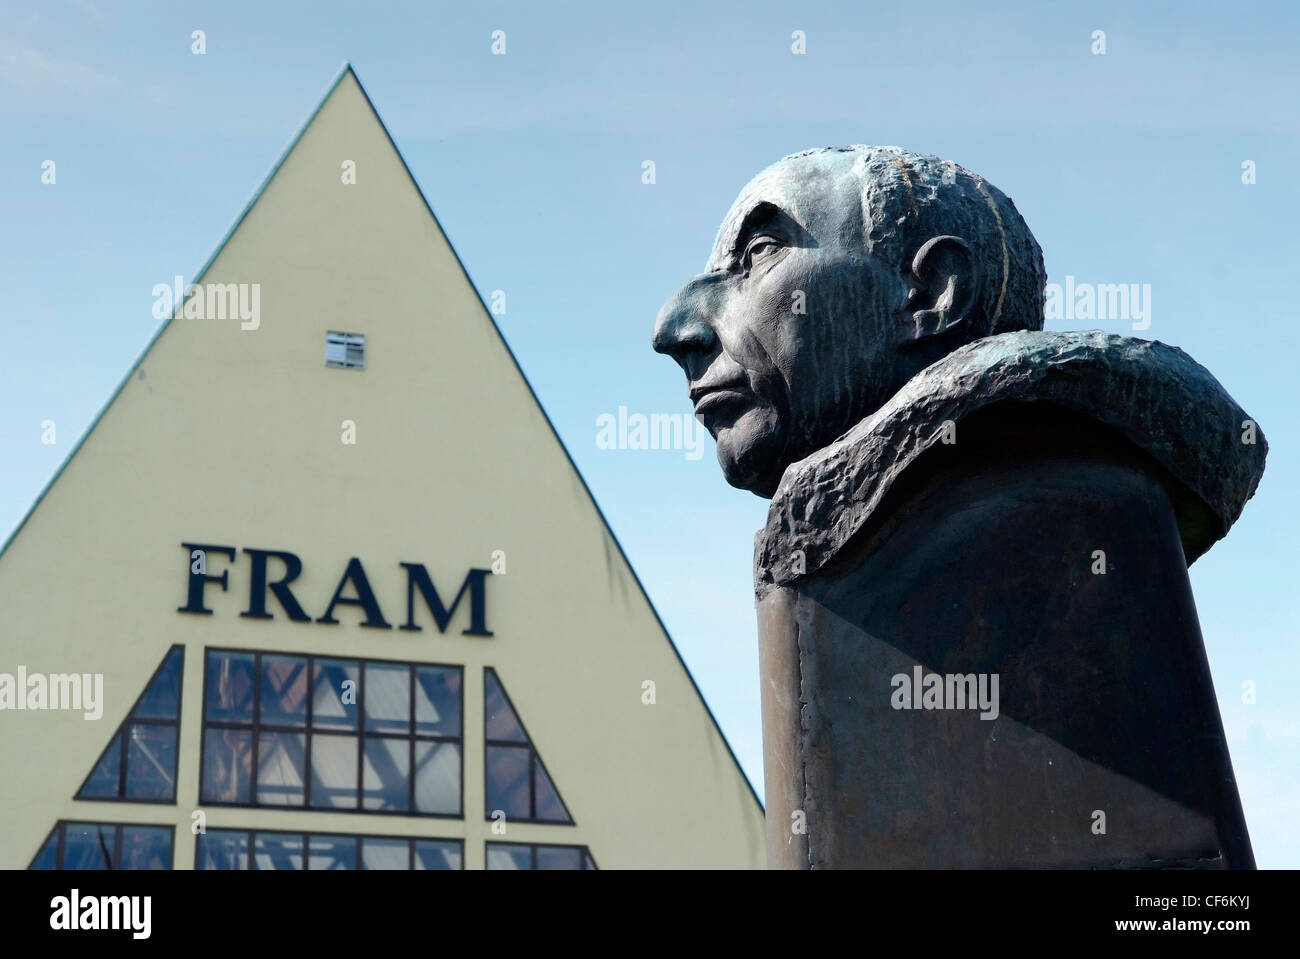 Norwegen Oslo das Fram-Museum (Norwegisch: Frammuseet) erzählt die Geschichte der norwegischen Polarforschung.  Amundsen-statue Stockfoto